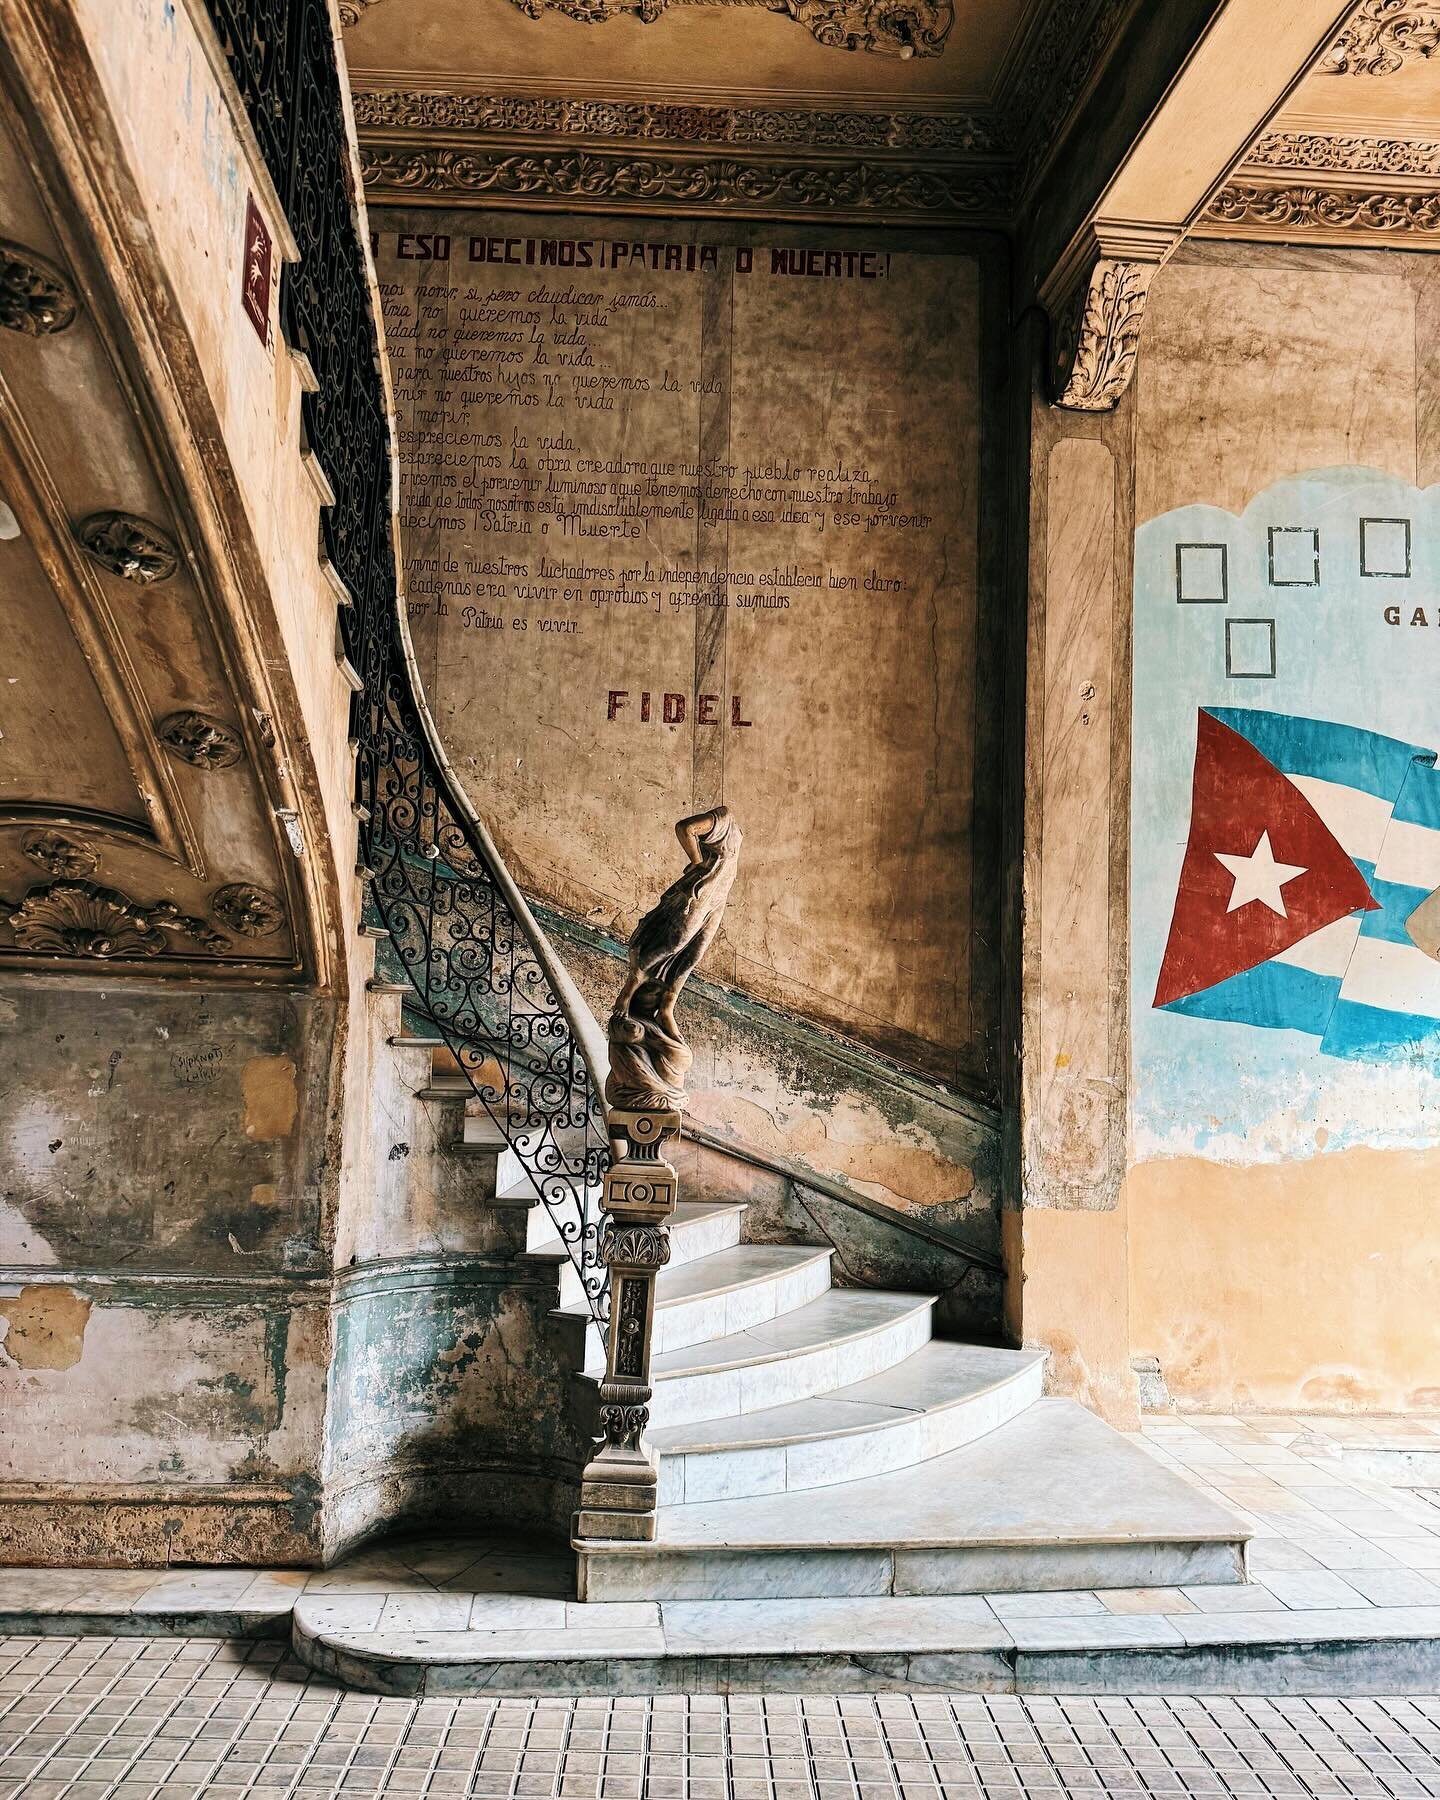 🇨🇺 La Habana, Las Terrazas, Soroa, Vi&ntilde;ales, Cayo Jut&iacute;as, Matanzas, Varadero&hellip; what a rum-arkable place. 😏

#cuba #vi&ntilde;ales #cayojutias #varaderocuba🇨🇺☀️🌊🌴 #vscocam #travelphotography